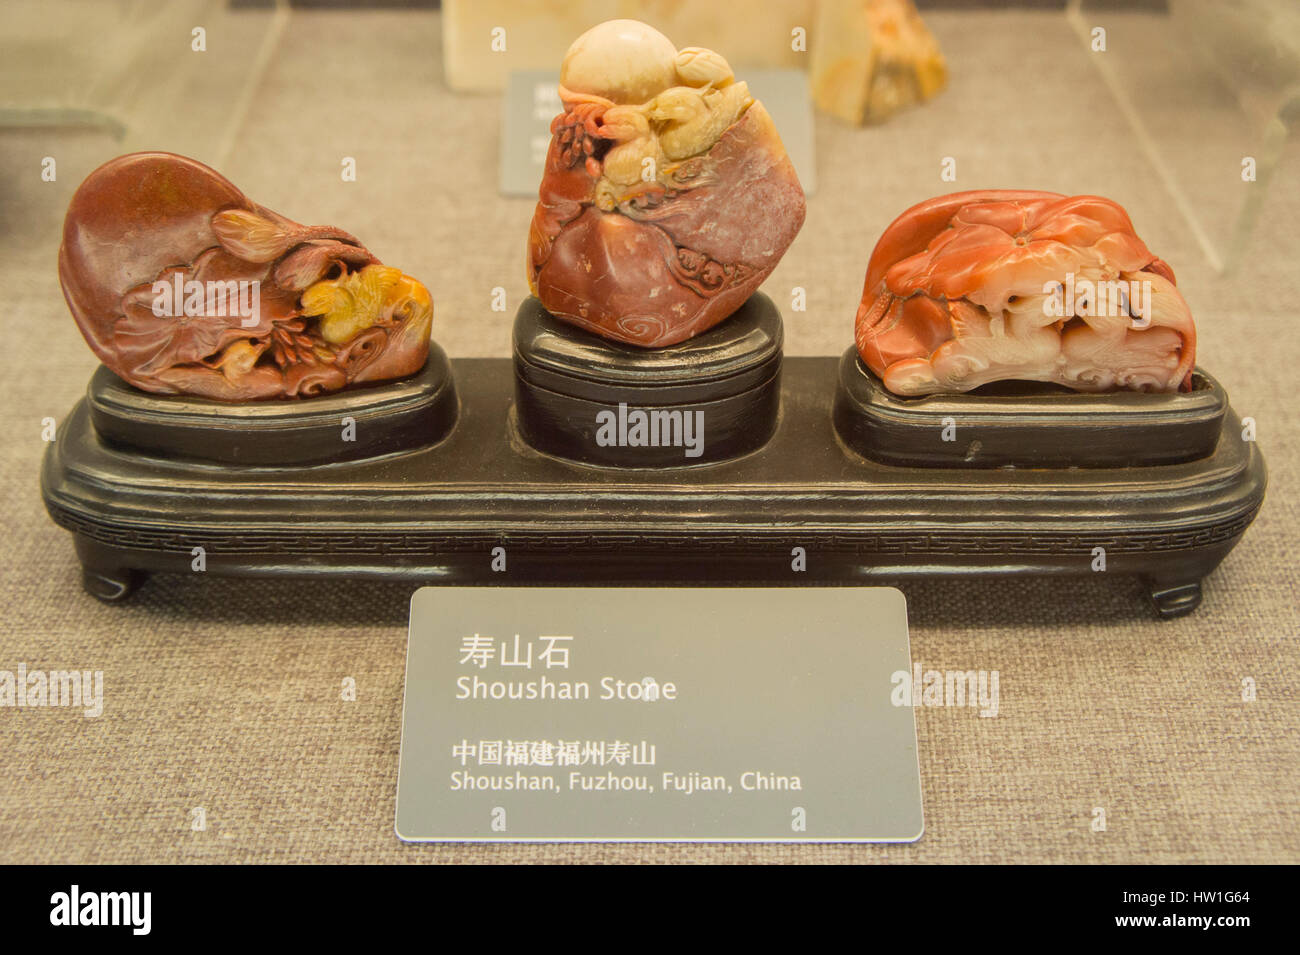 The shoushan stone fuzhou fujian china Stock Photo